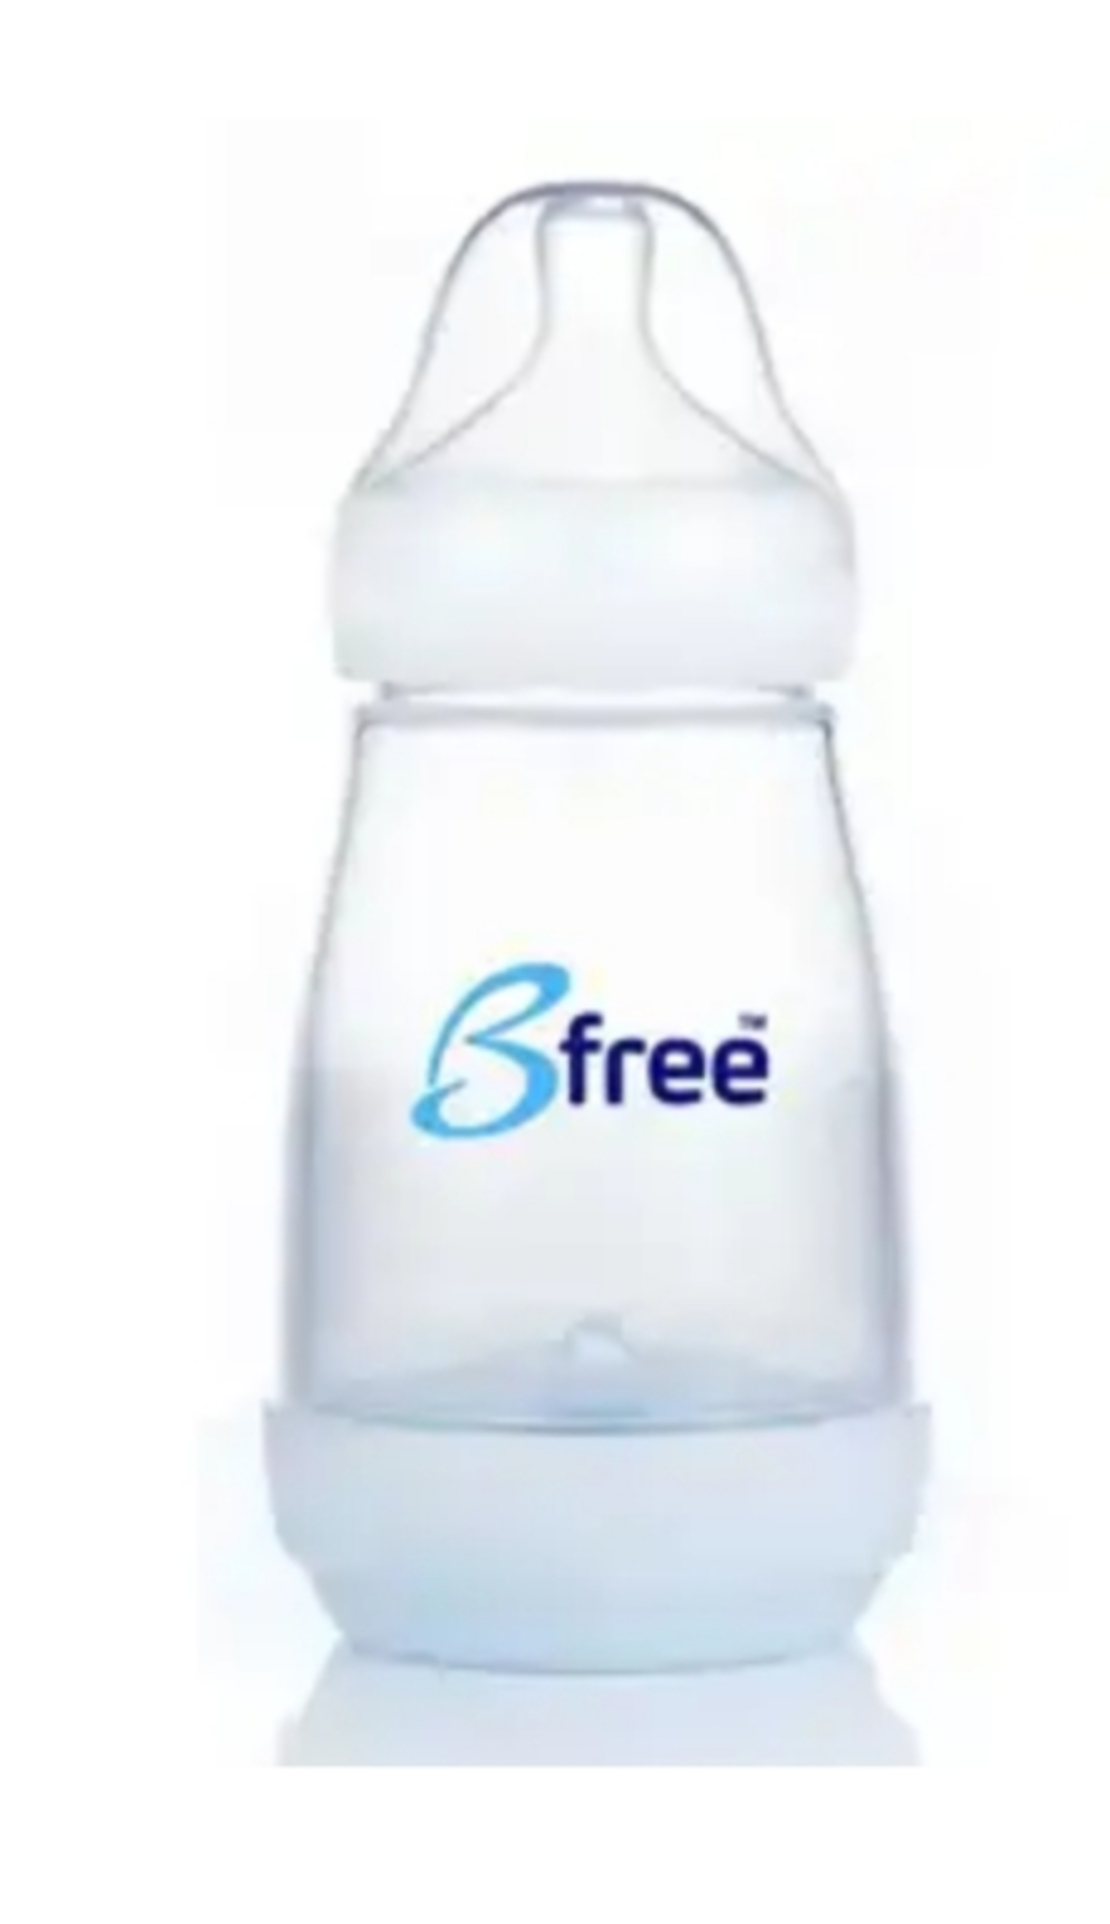 בקבוק B-free החדש 260 מ